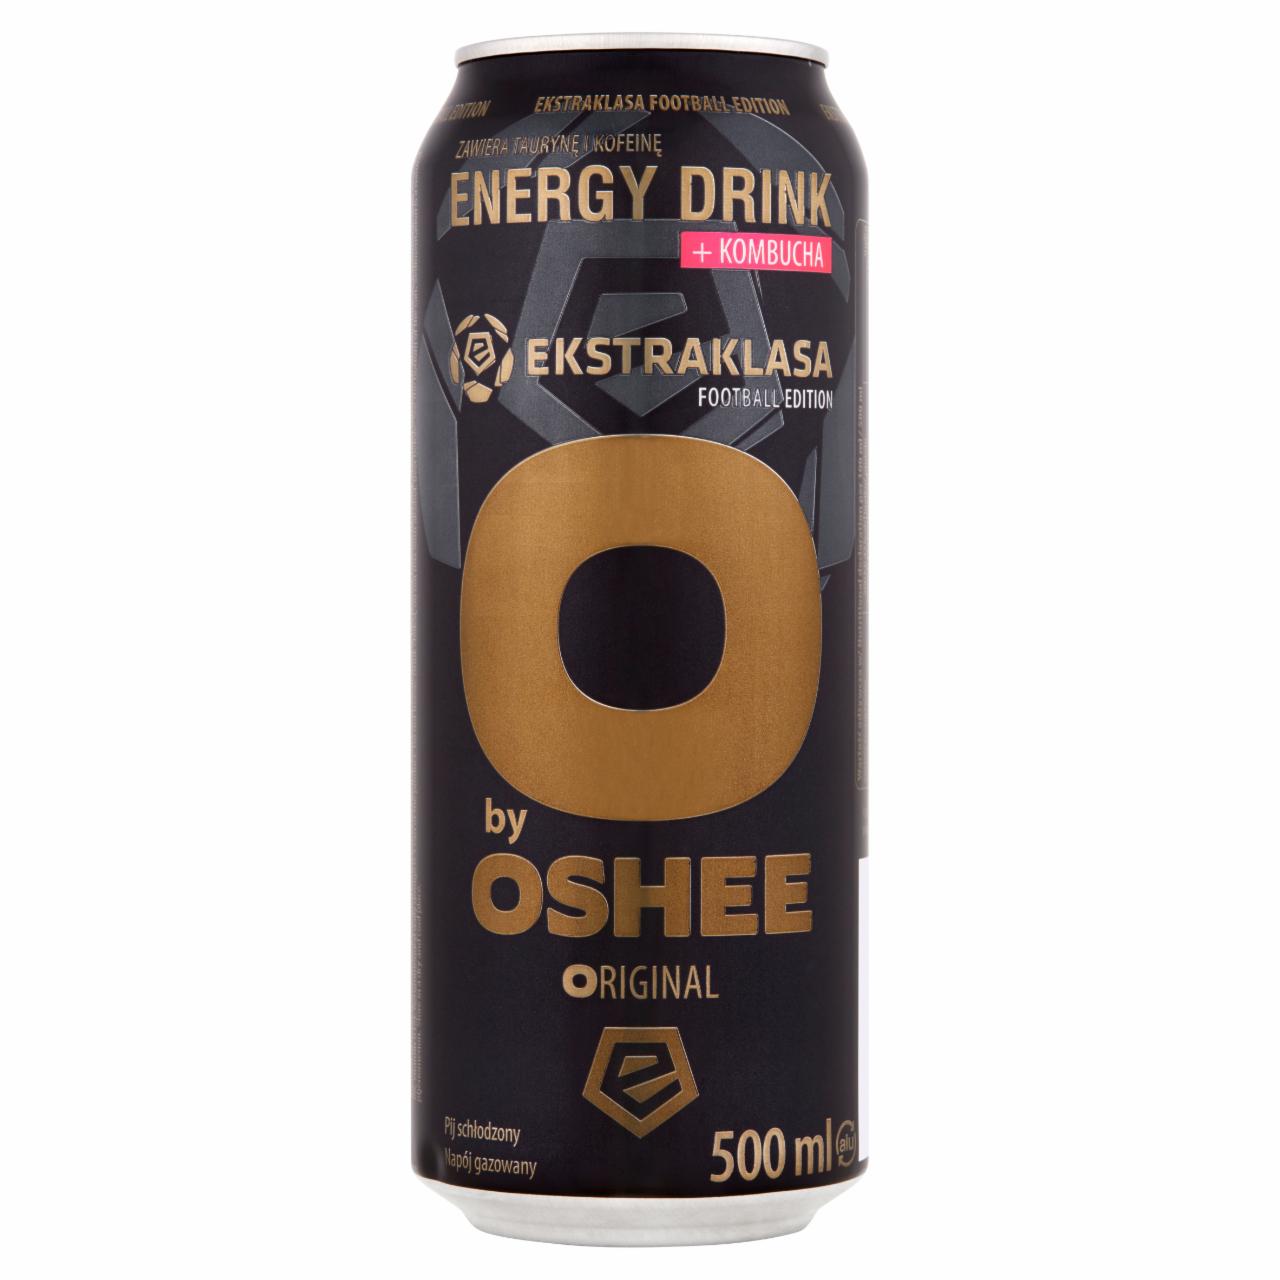 Zdjęcia - Oshee O by Oshee Ekstraklasa Football Edition Gazowany napój energetyzujący 500 ml